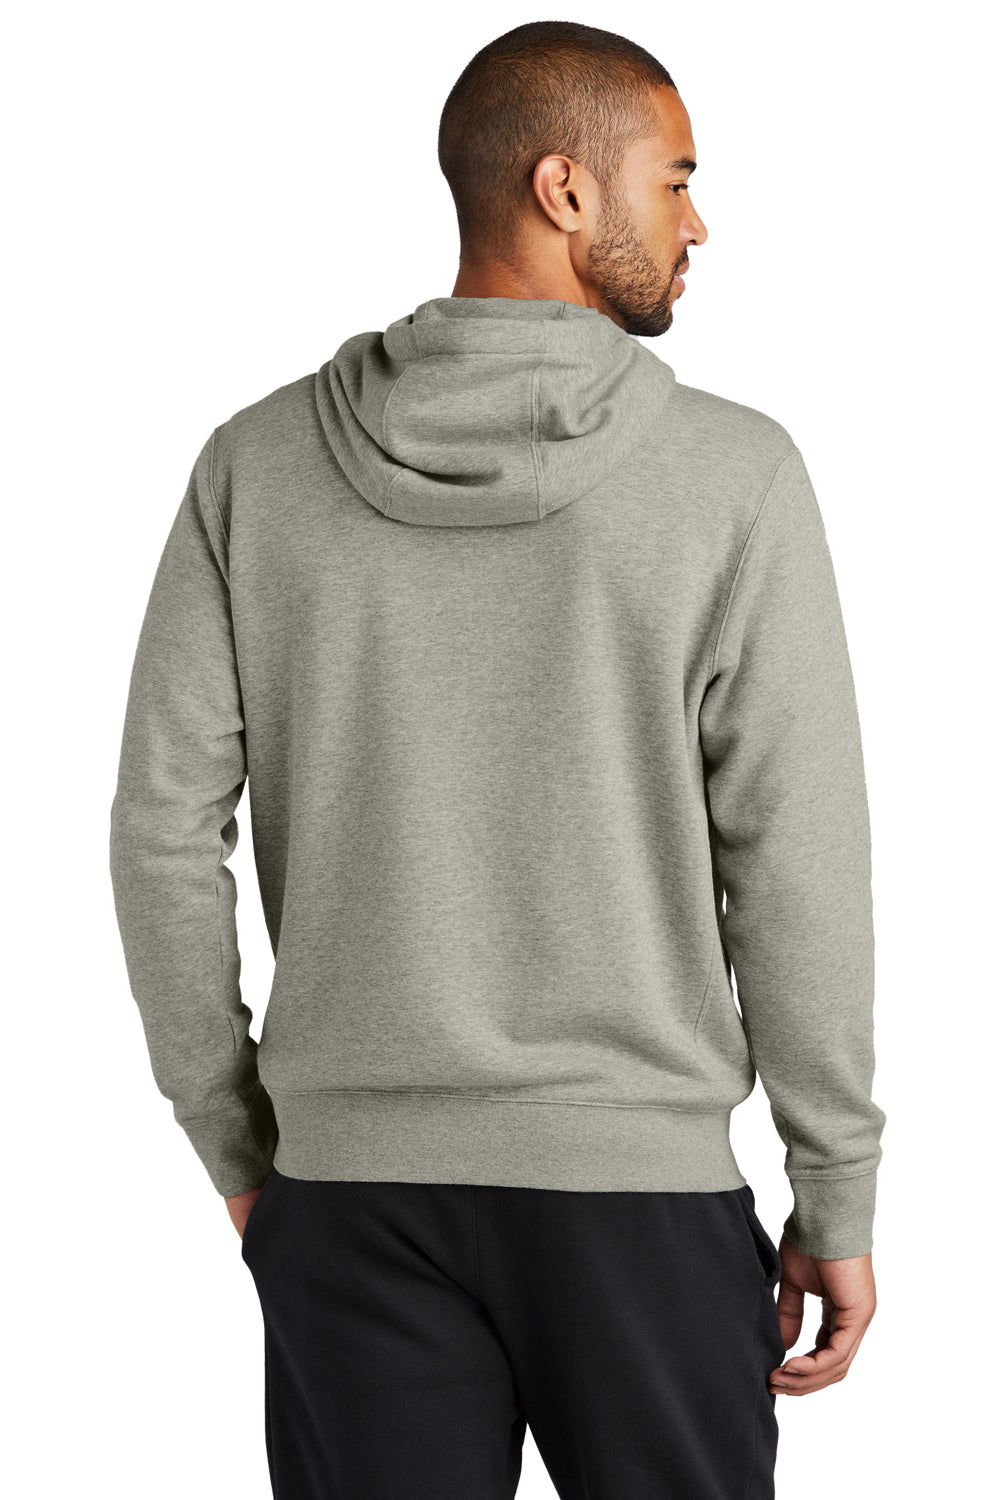 Nike NKDR1513 Mens Club Fleece Full Zip Hooded Sweatshirt Hoodie Heather Dark Grey Model Back